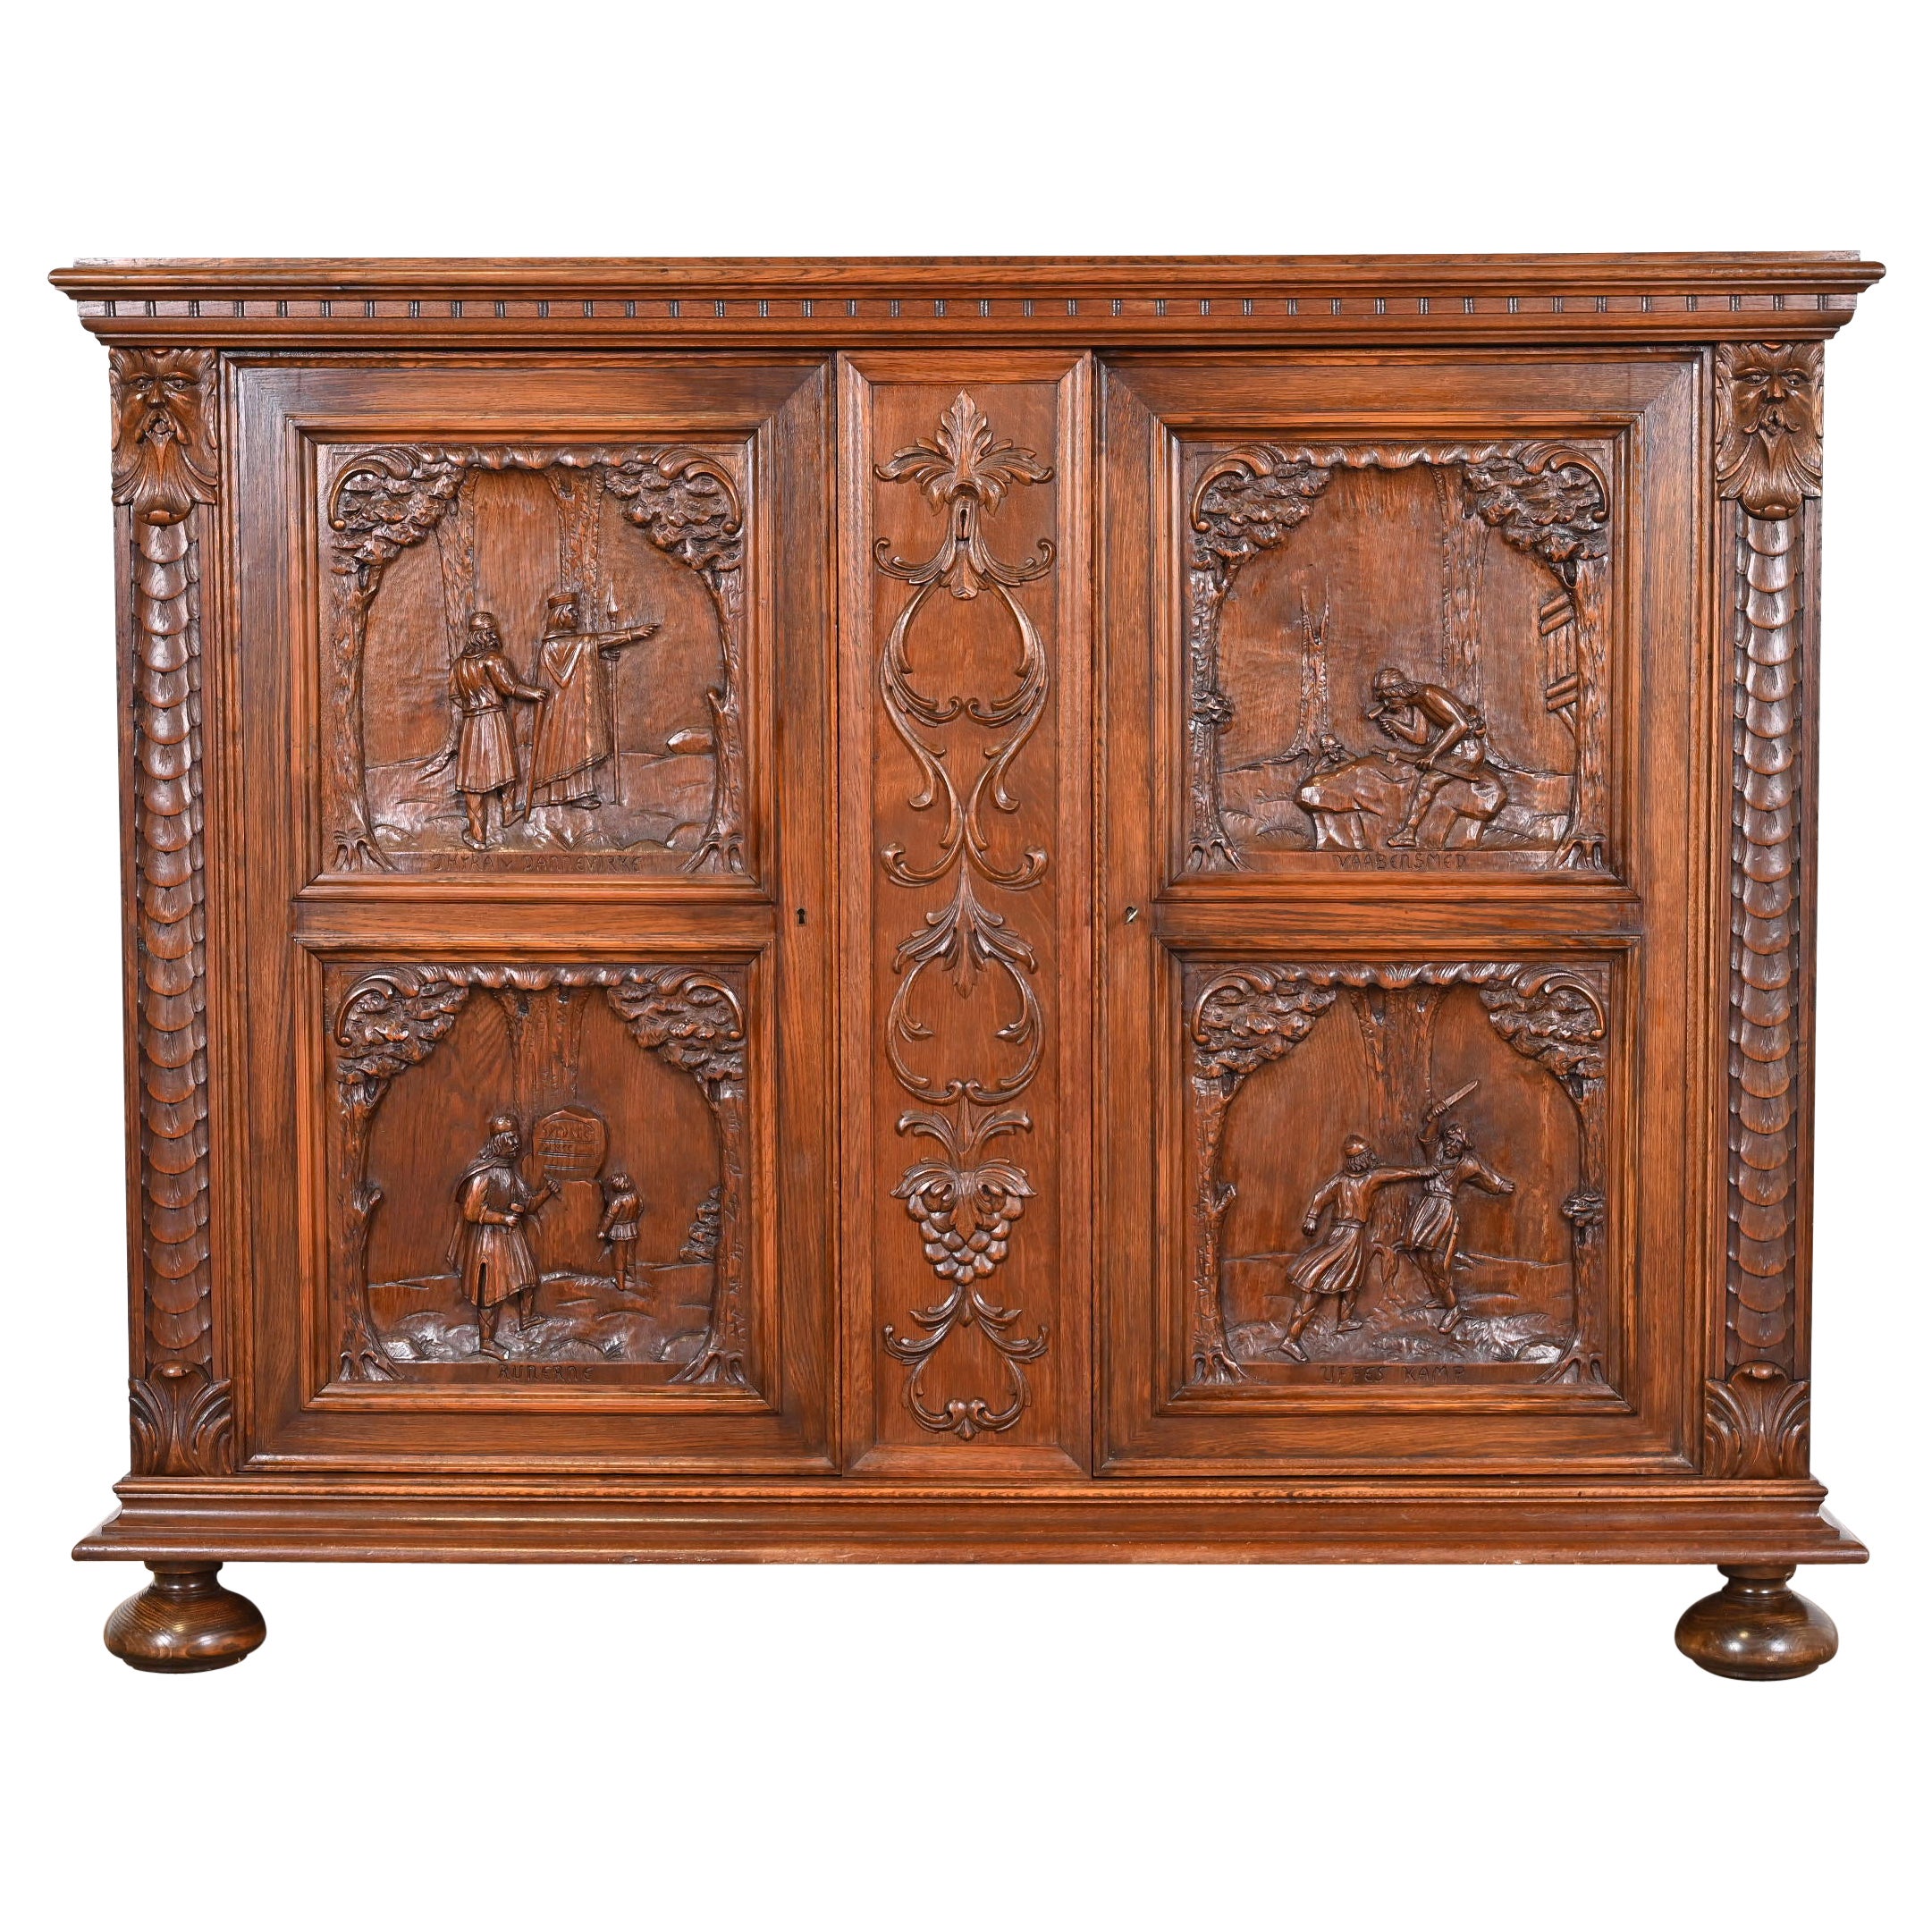 Antique Danish Renaissance Revival Ornate Carved Oak Sideboard or Bar Cabinet